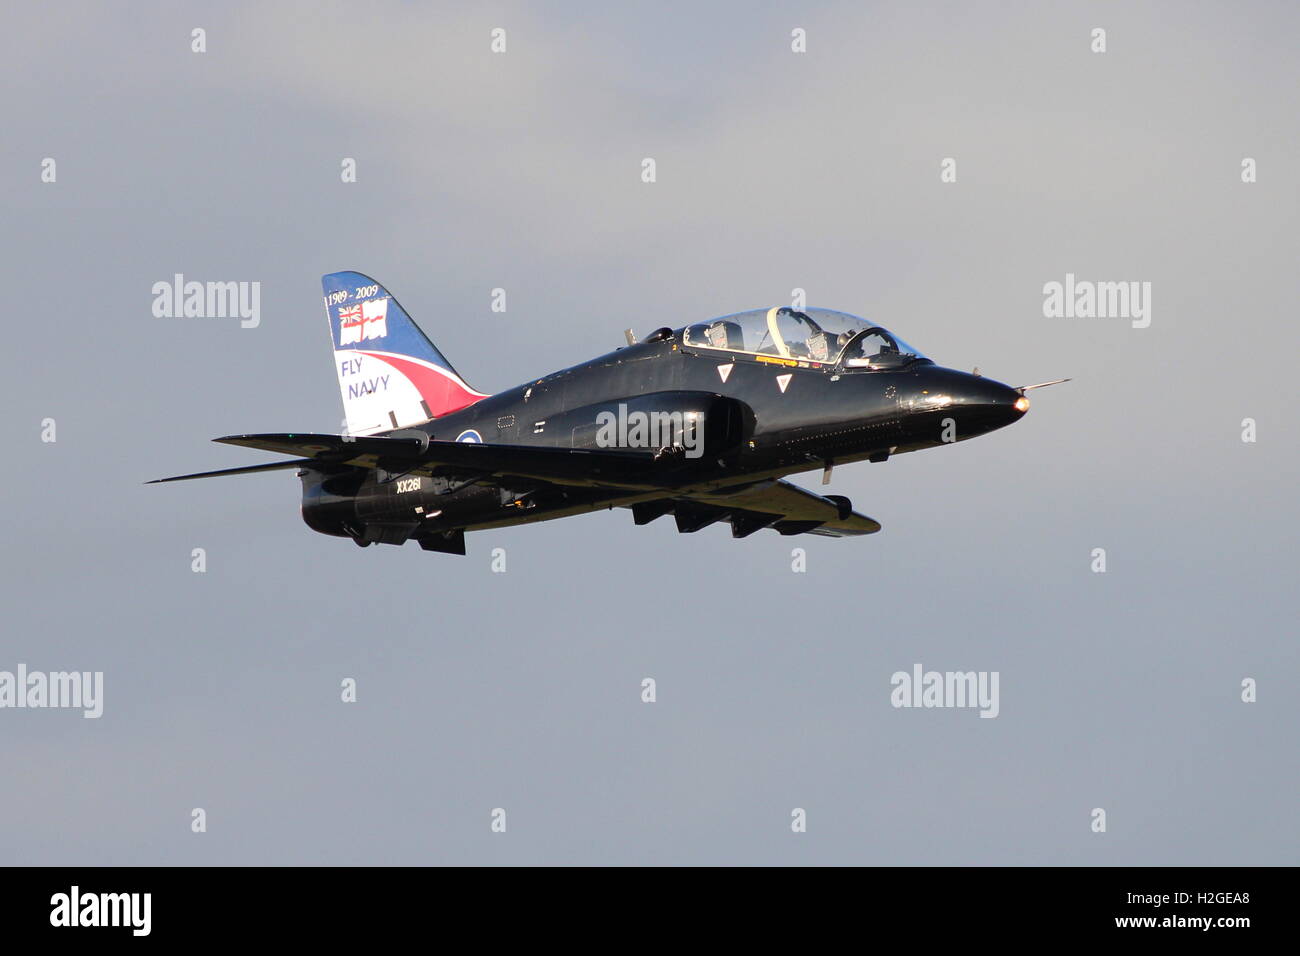 XX203, a BAe Hawk T1 azionato dalla Royal Navy, a Prestwick International Airport durante l'esercizio comune della Warrior14-2. Foto Stock